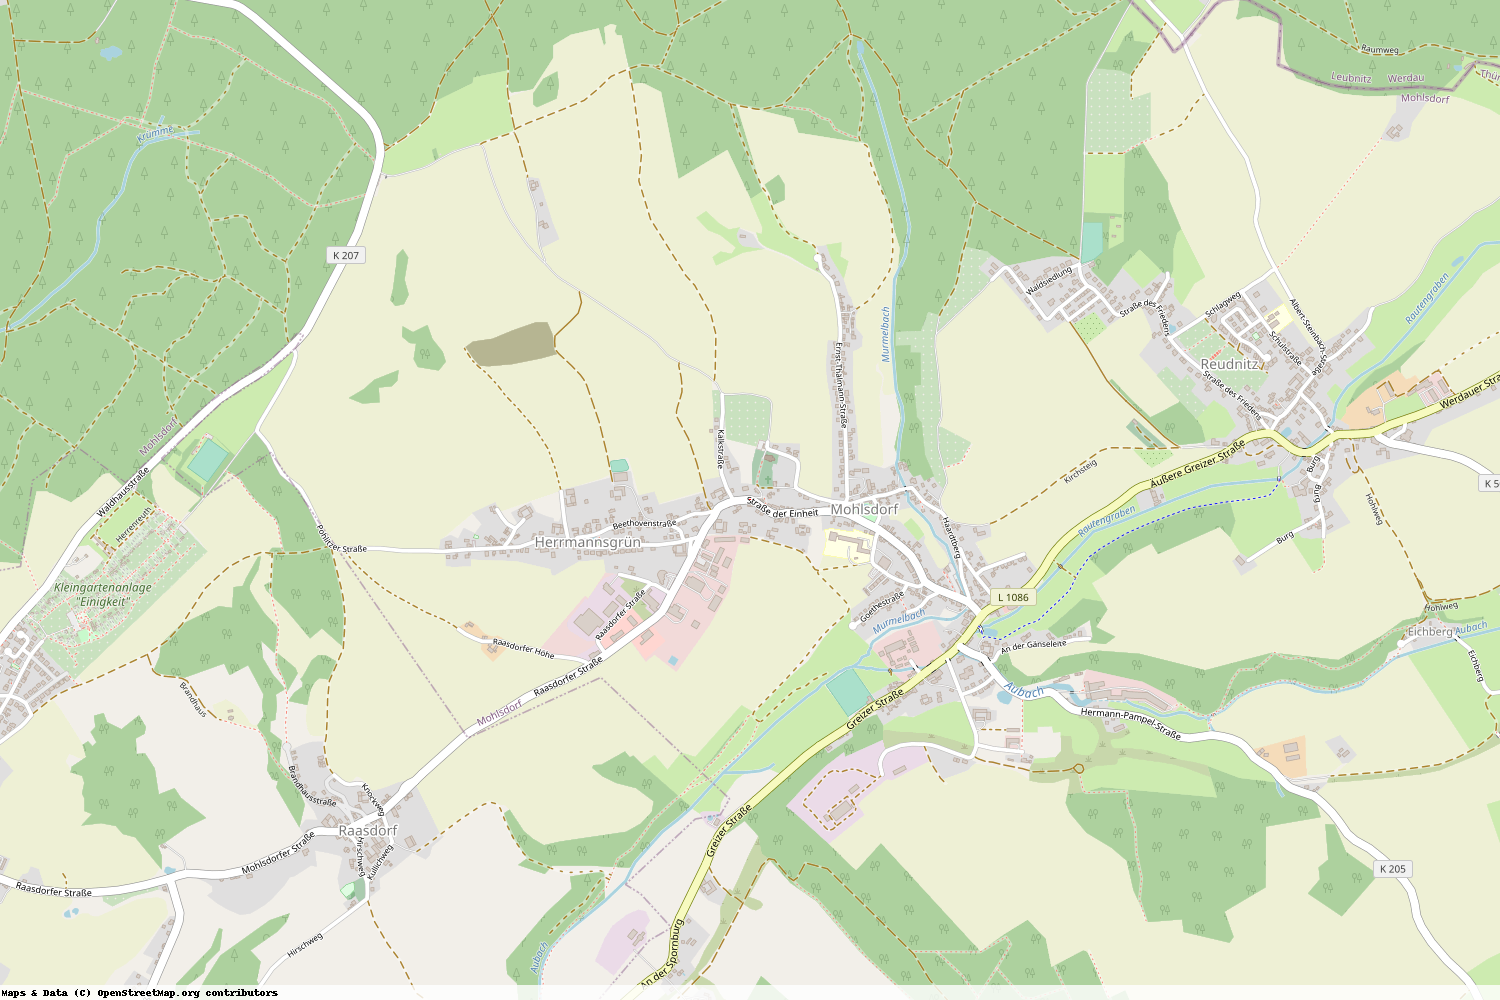 Ist gerade Stromausfall in Thüringen - Greiz - Mohlsdorf-Teichwolframsdorf?